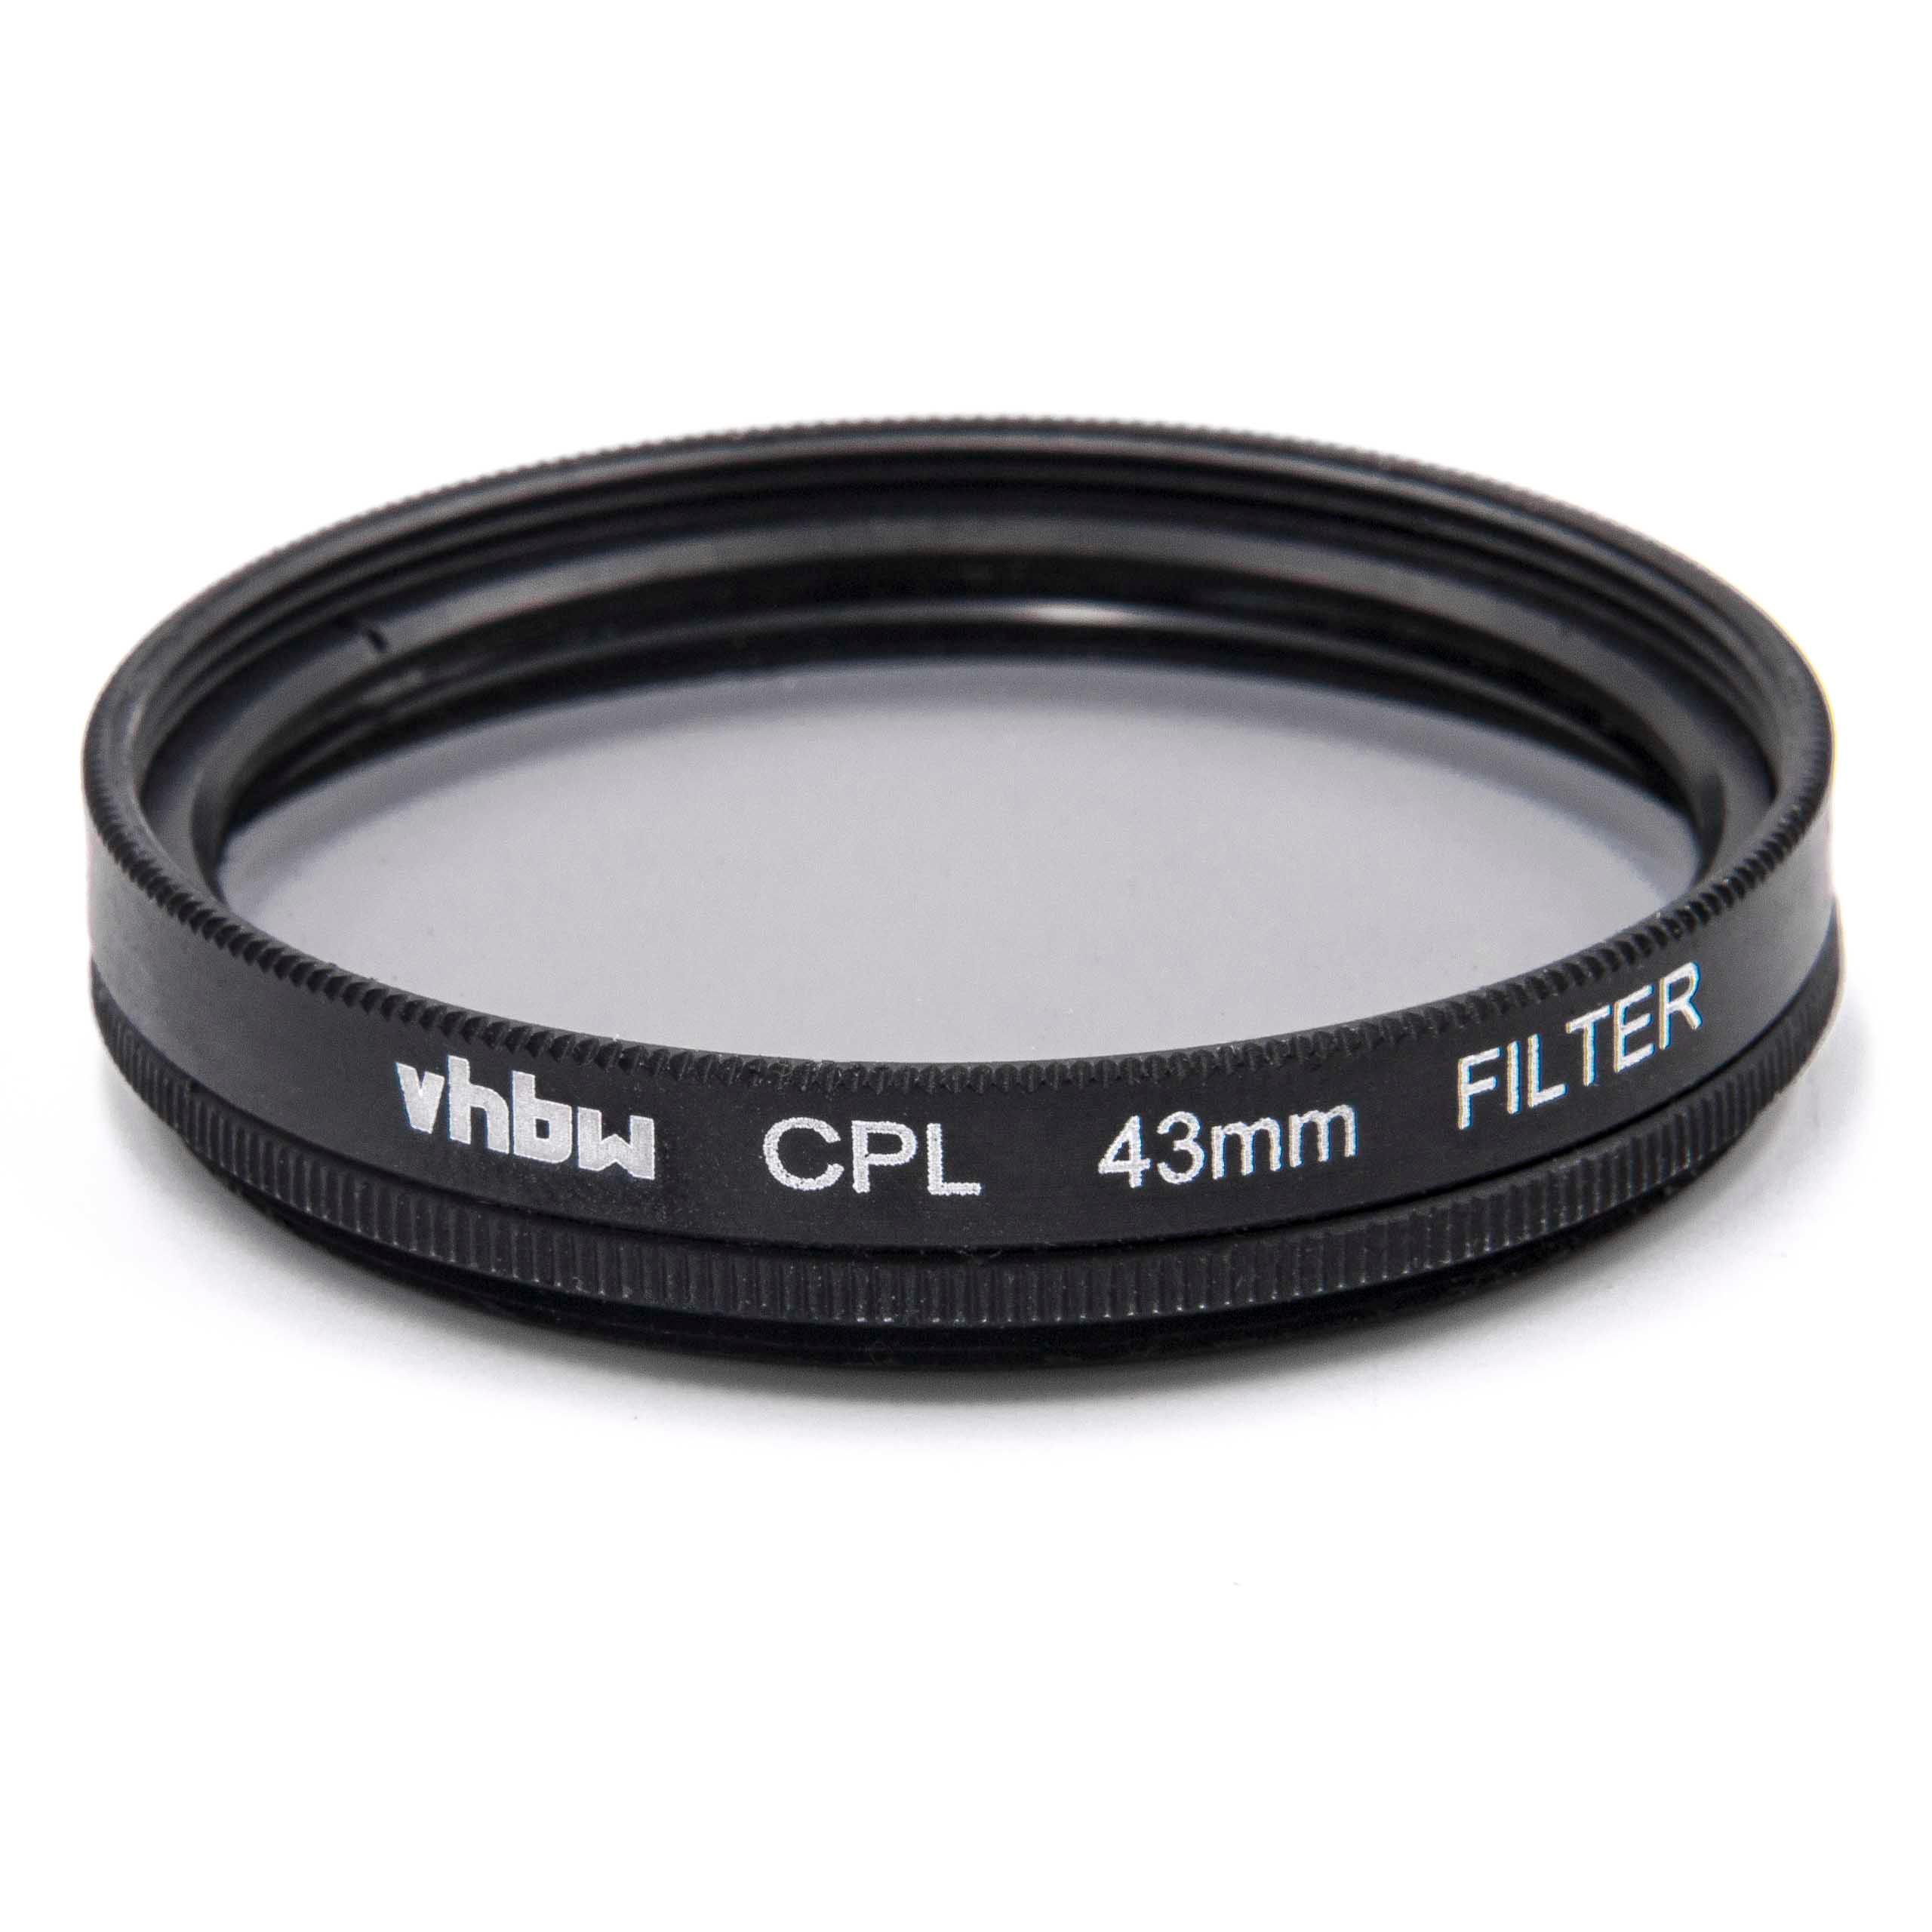 Filtr polaryzacyjny 43mm do różnych obiektywów aparatów - filtr CPL 